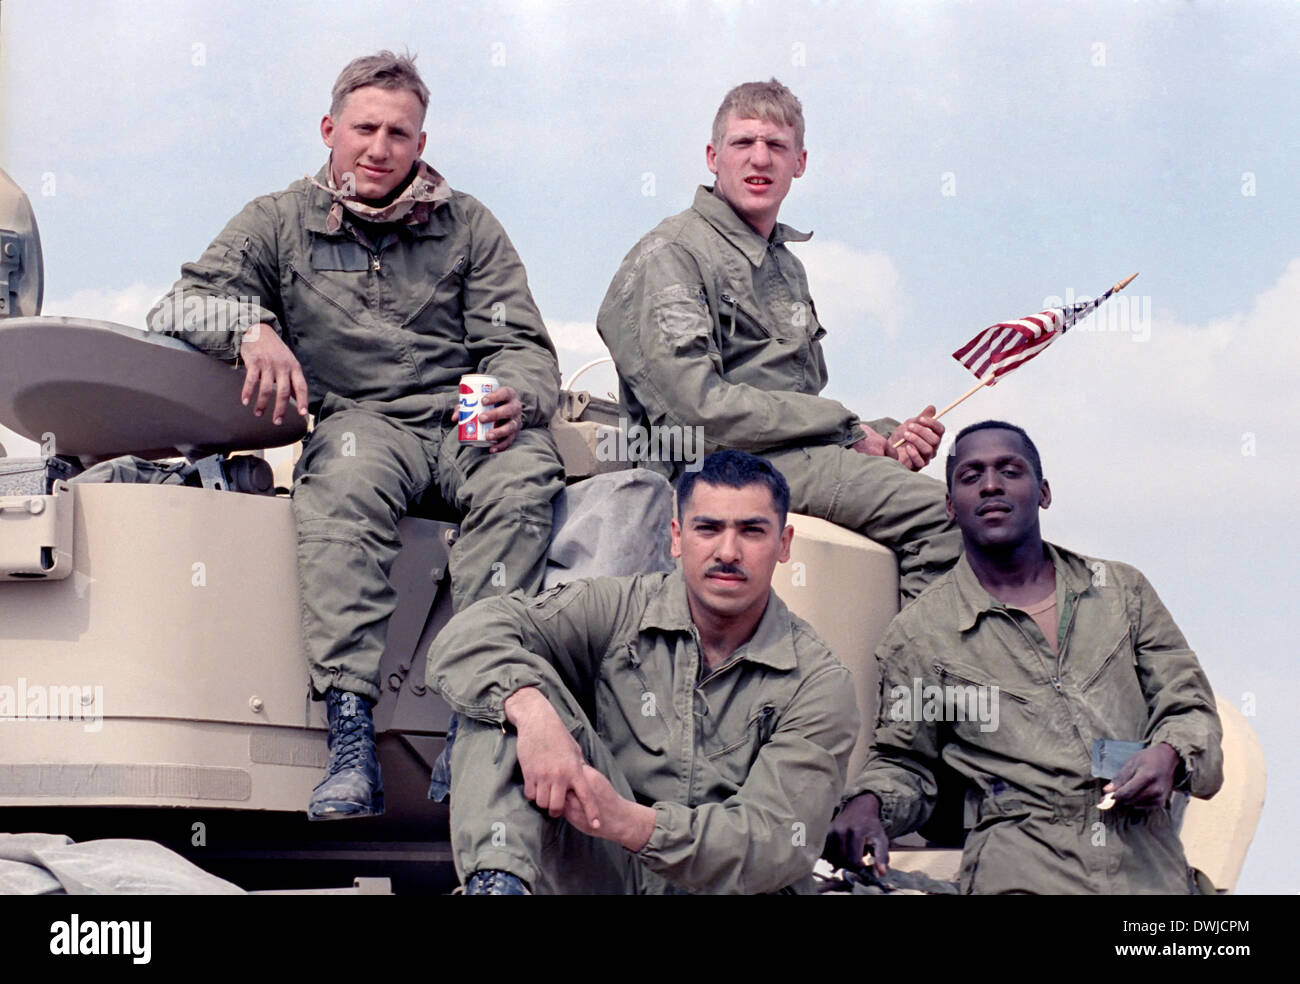 Les soldats de l'Armée US s'asseoir sur le dessus de leur véhicule de combat Bradley après la bataille commencé le passage de la frontière vers l'Iraq au cours de la guerre du Golfe le 24 février 1991 dans le sud de l'Iraq. Banque D'Images